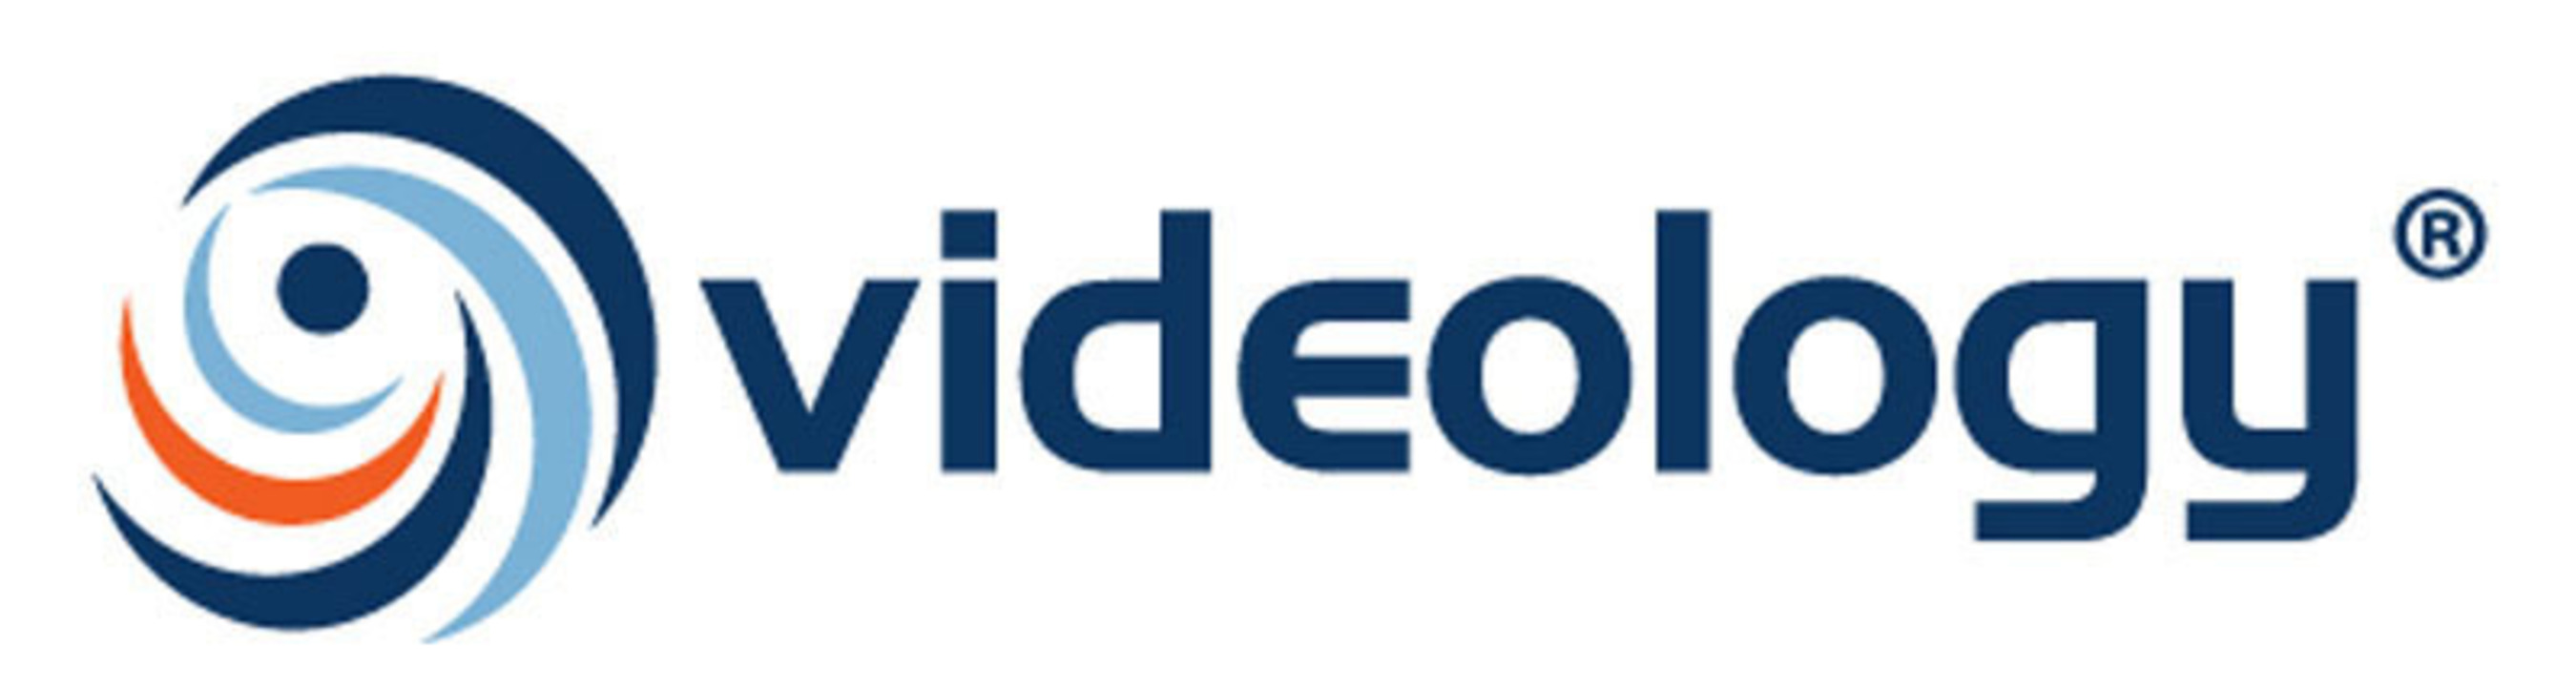 Videology logo.